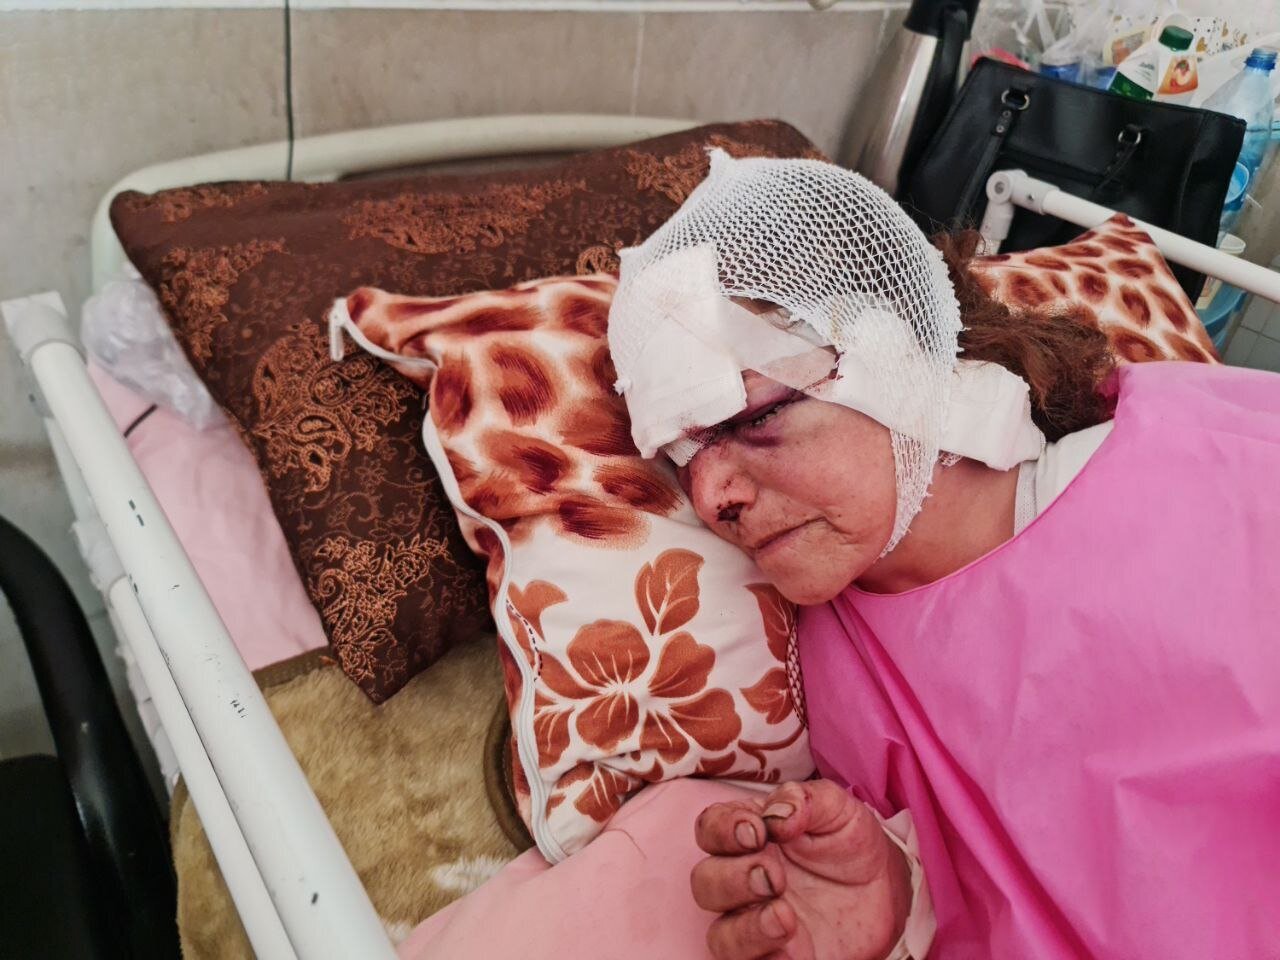 جدال زن 60 ساله و خرس در ارتفاعات پیرانشهر / روایت ماجرا از زبان پسرش + تصویر دلخراش زن در بیمارستان 2